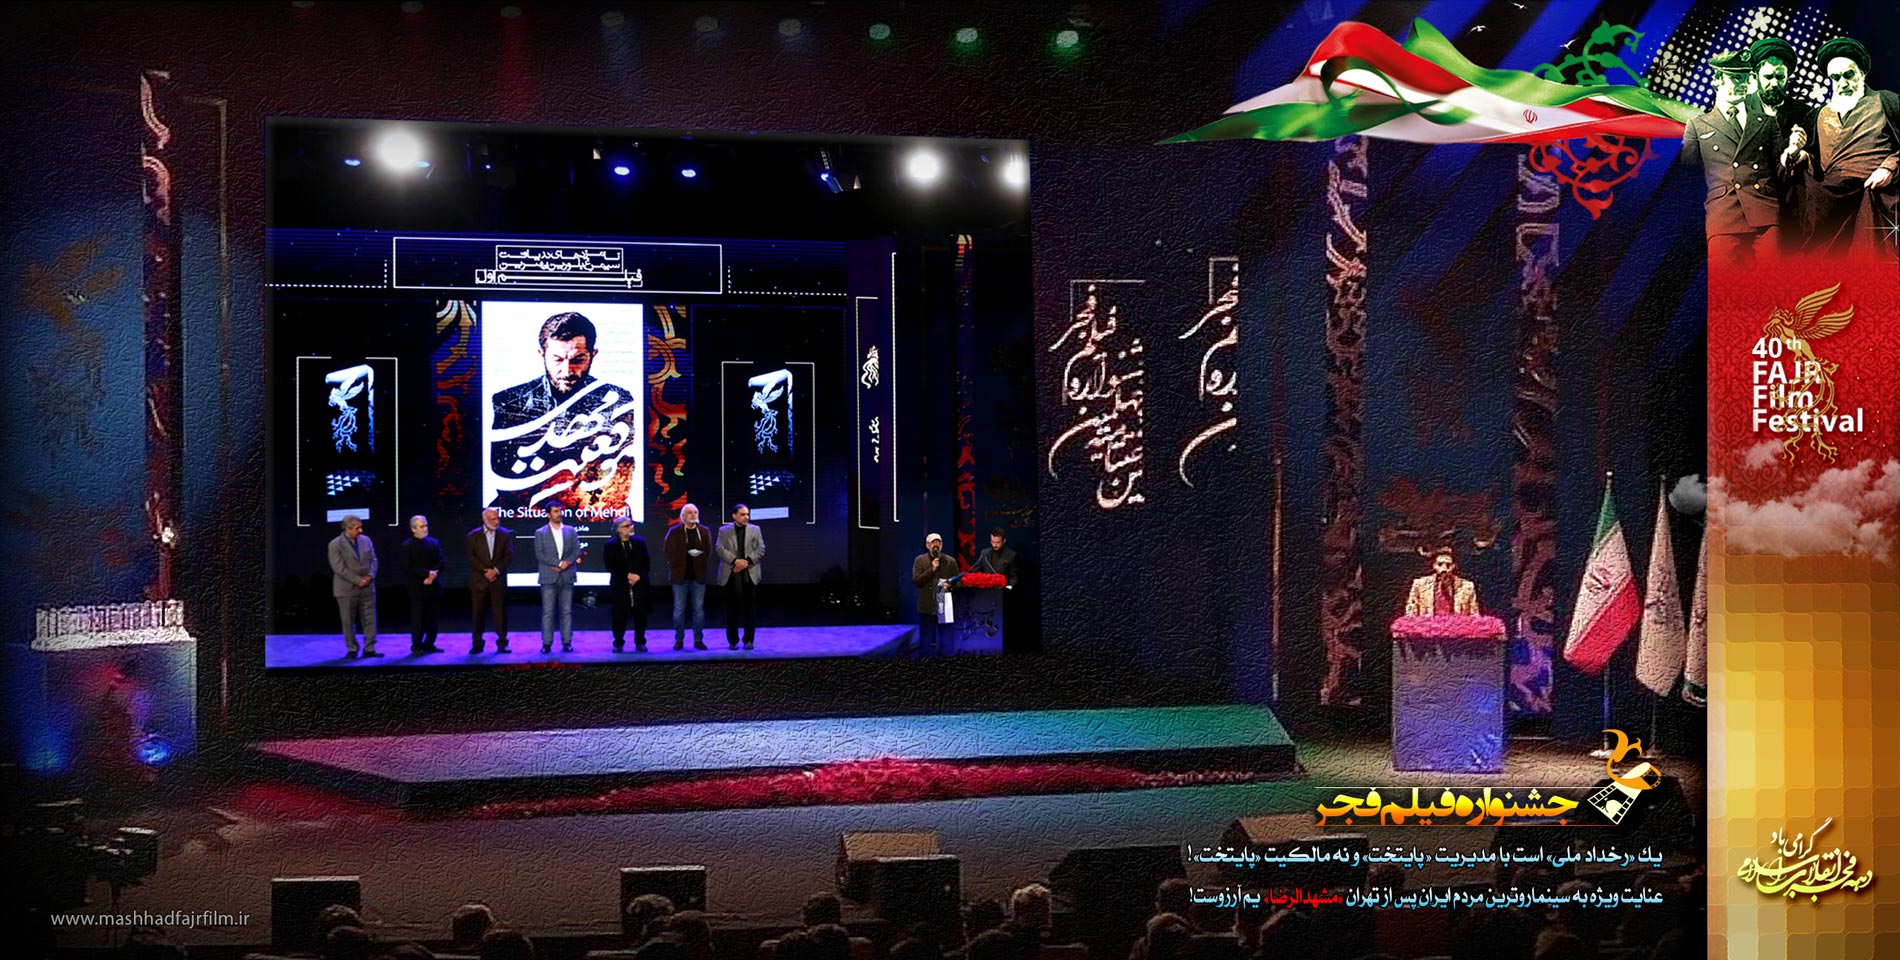 نگارخانه/ جشنواره فیلم فجر، یک رخداد ملی است با مدیریت پایتخت نه مالکیت آن، توجه ویژه به مشهدم آرزوست!